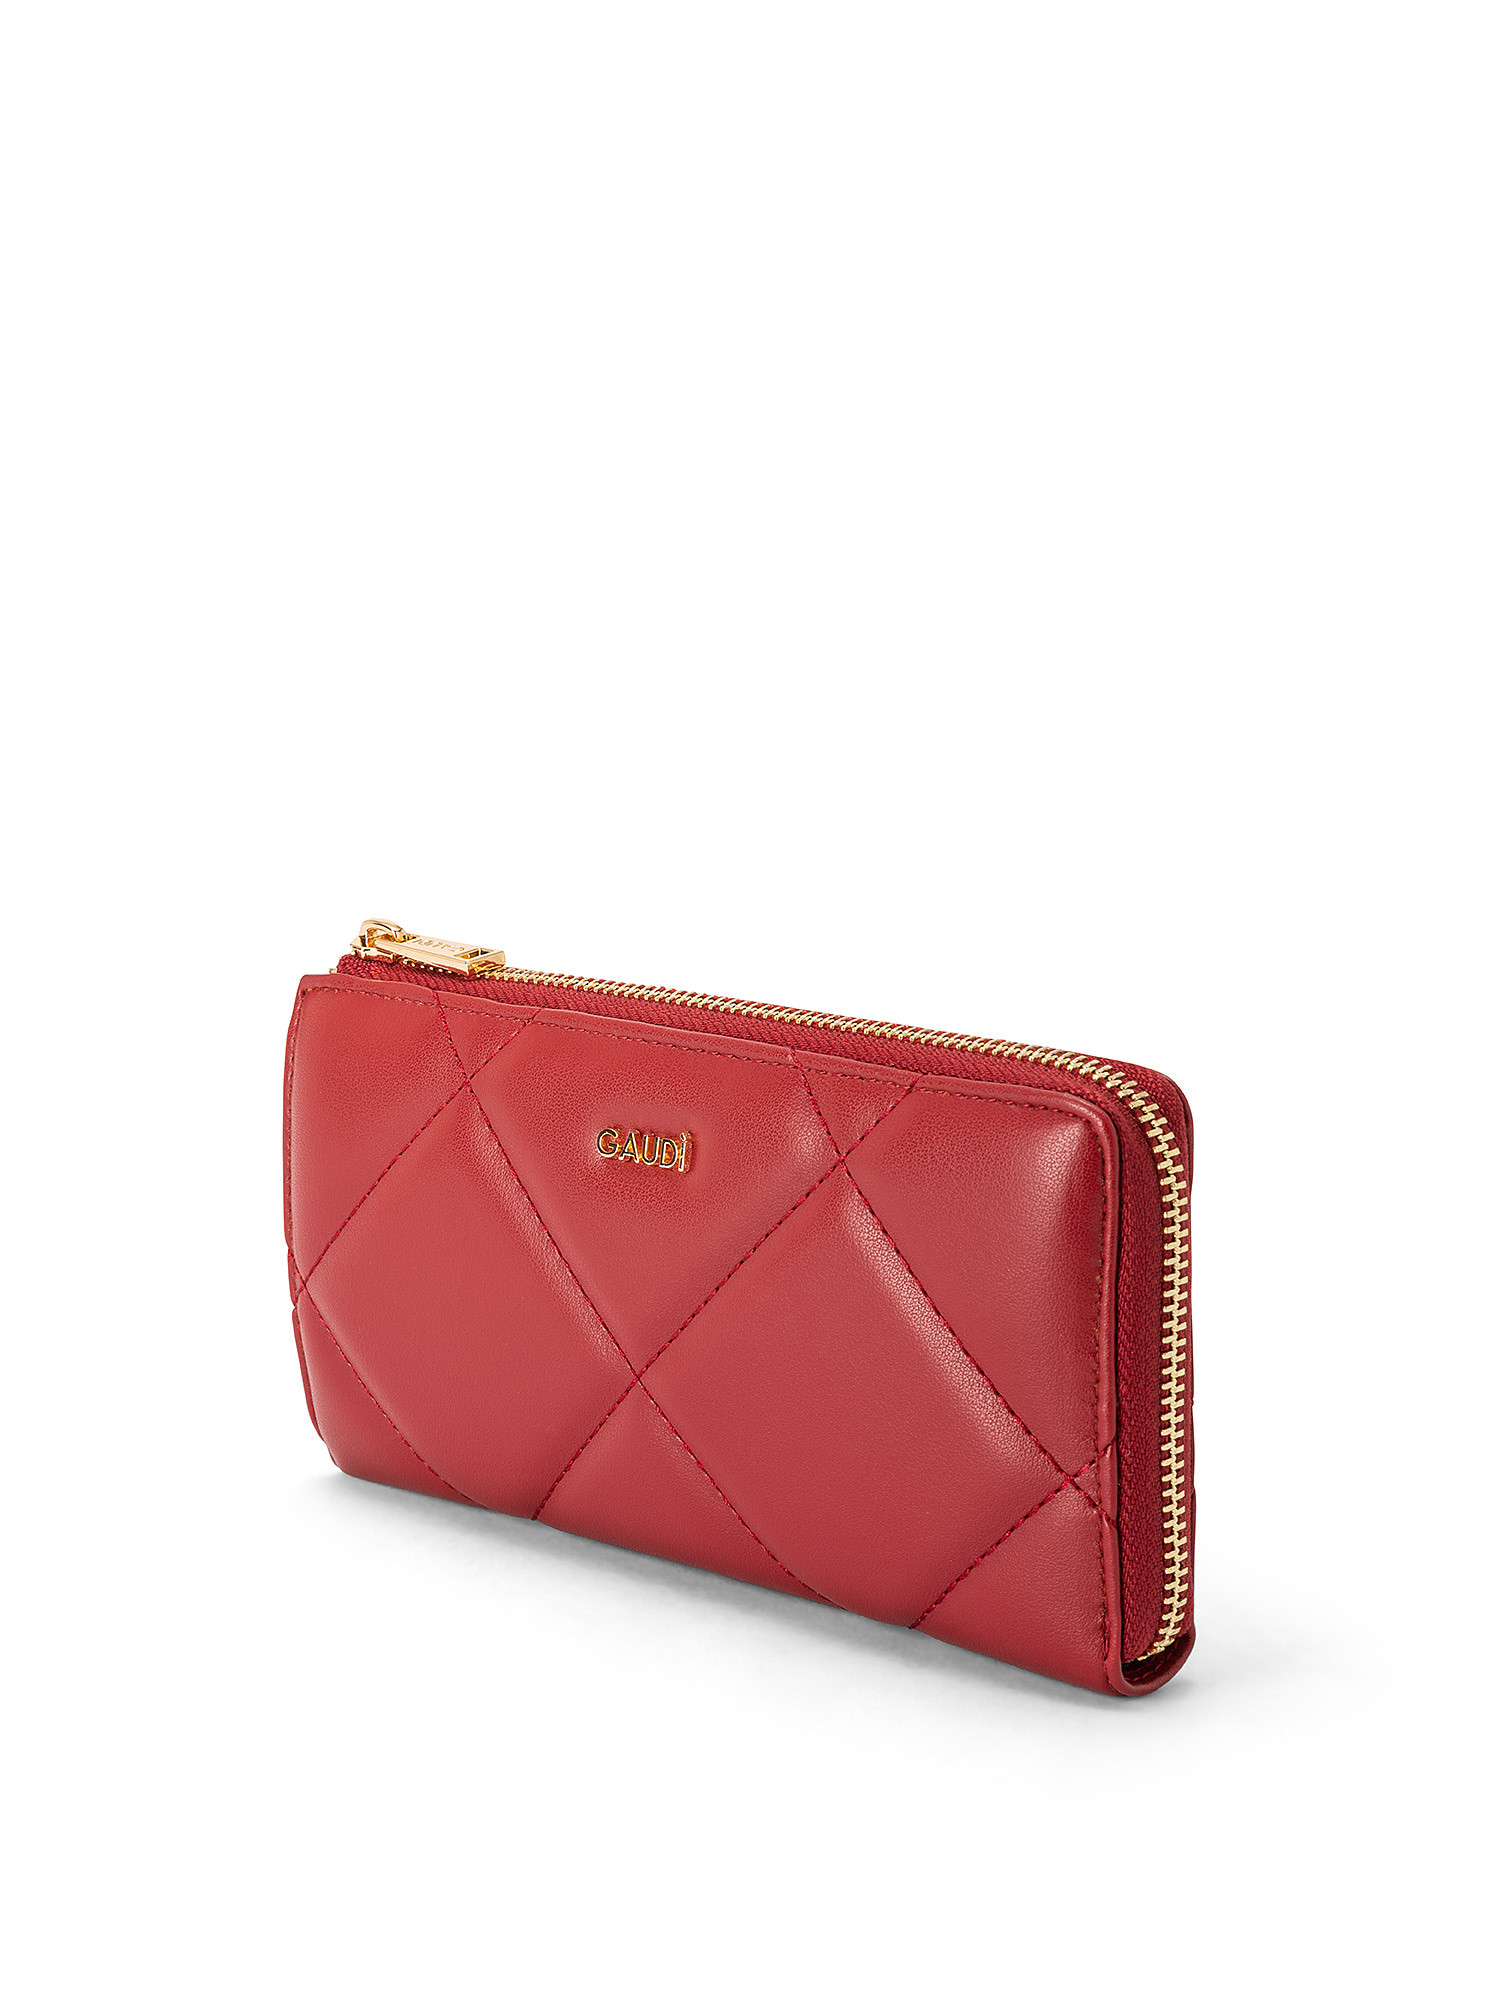 Gaudì - Luna wallet, Dark Red, large image number 1